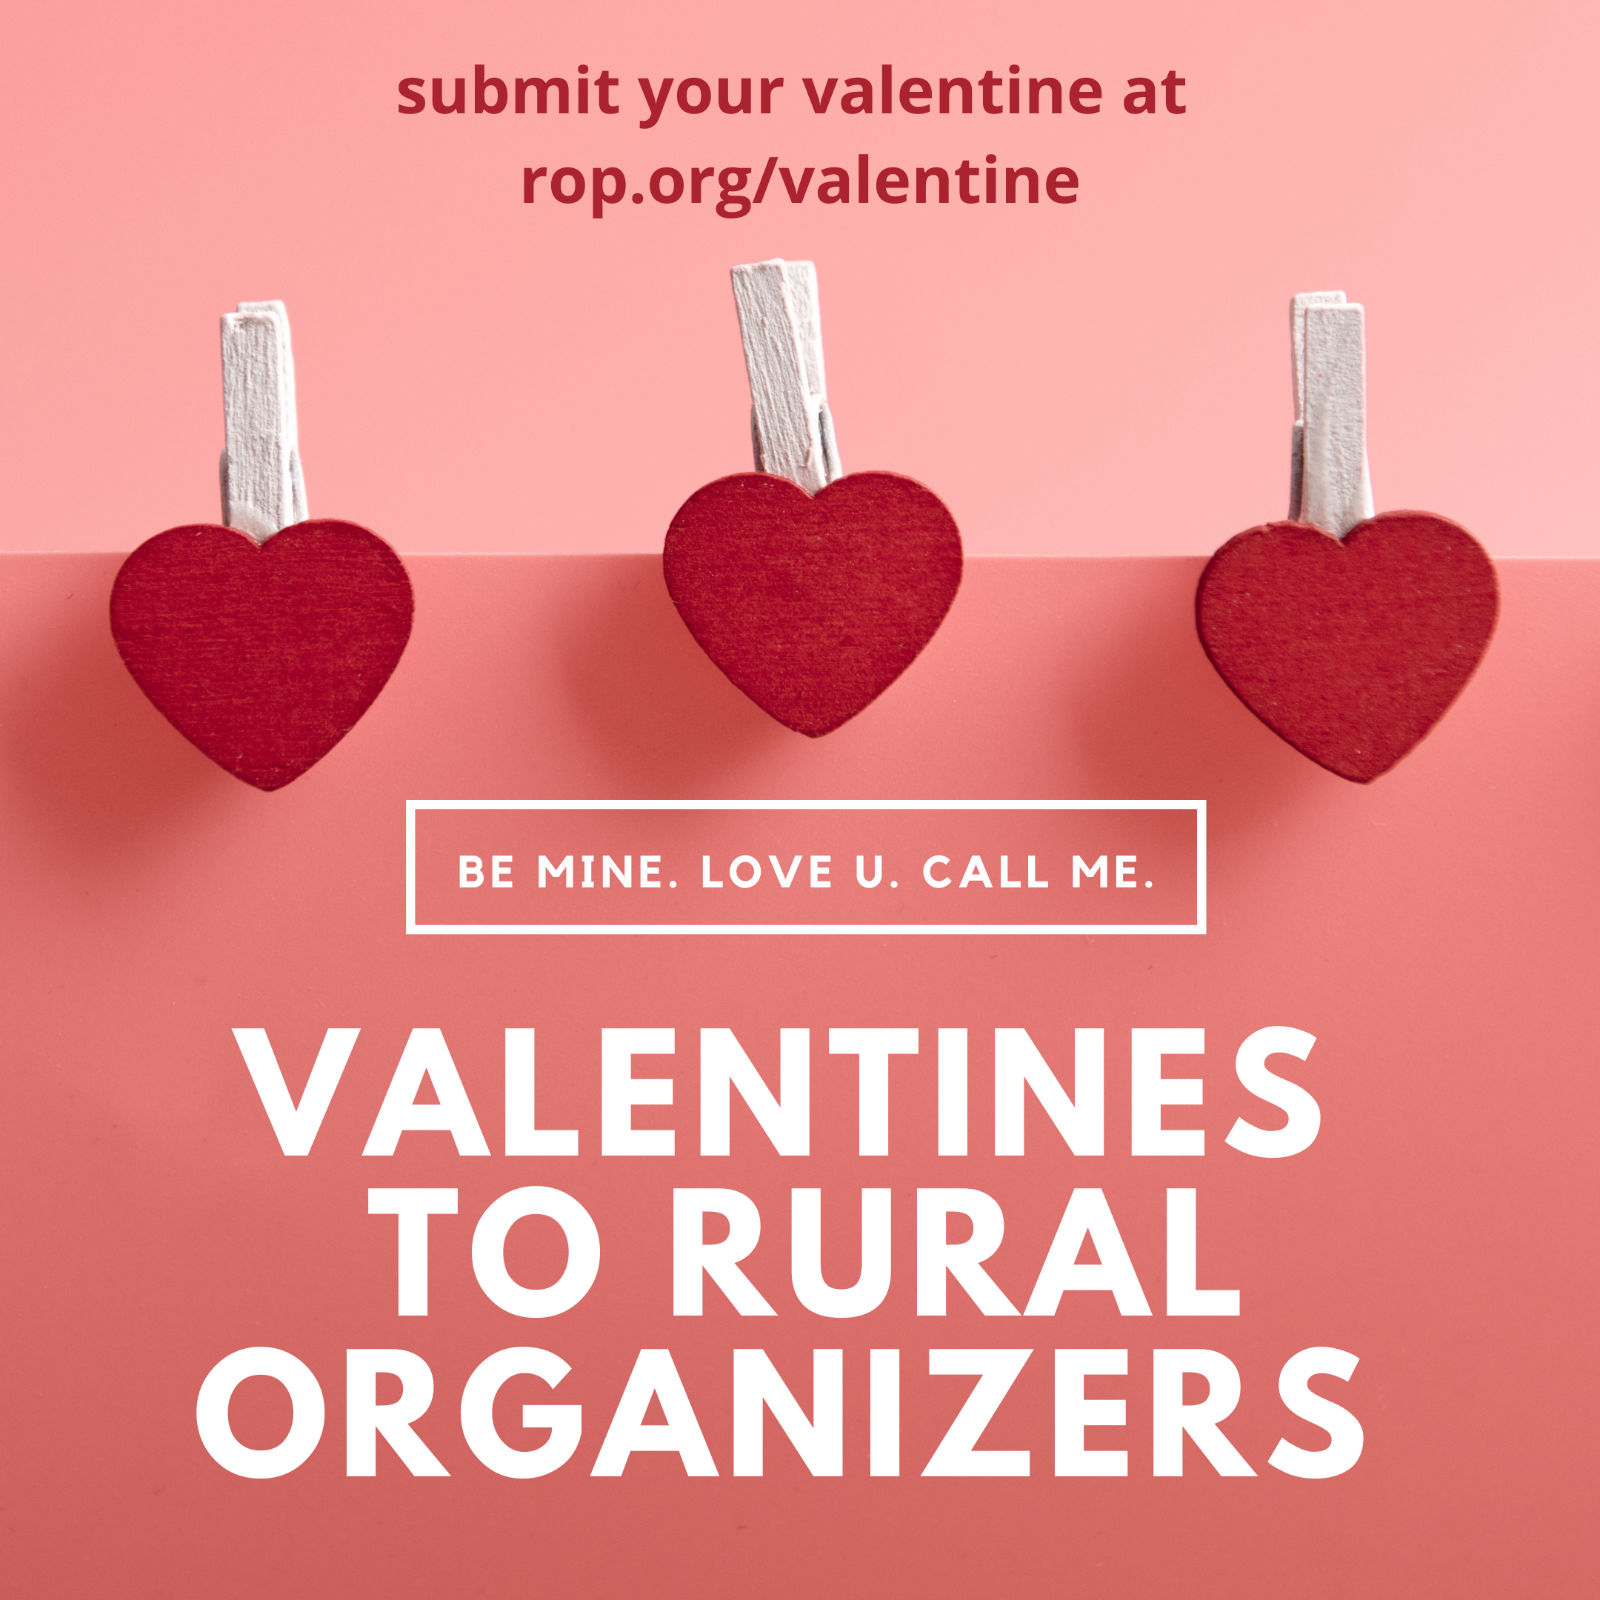 أرسل عيد الحب الخاص بك على rop.org/valentine.